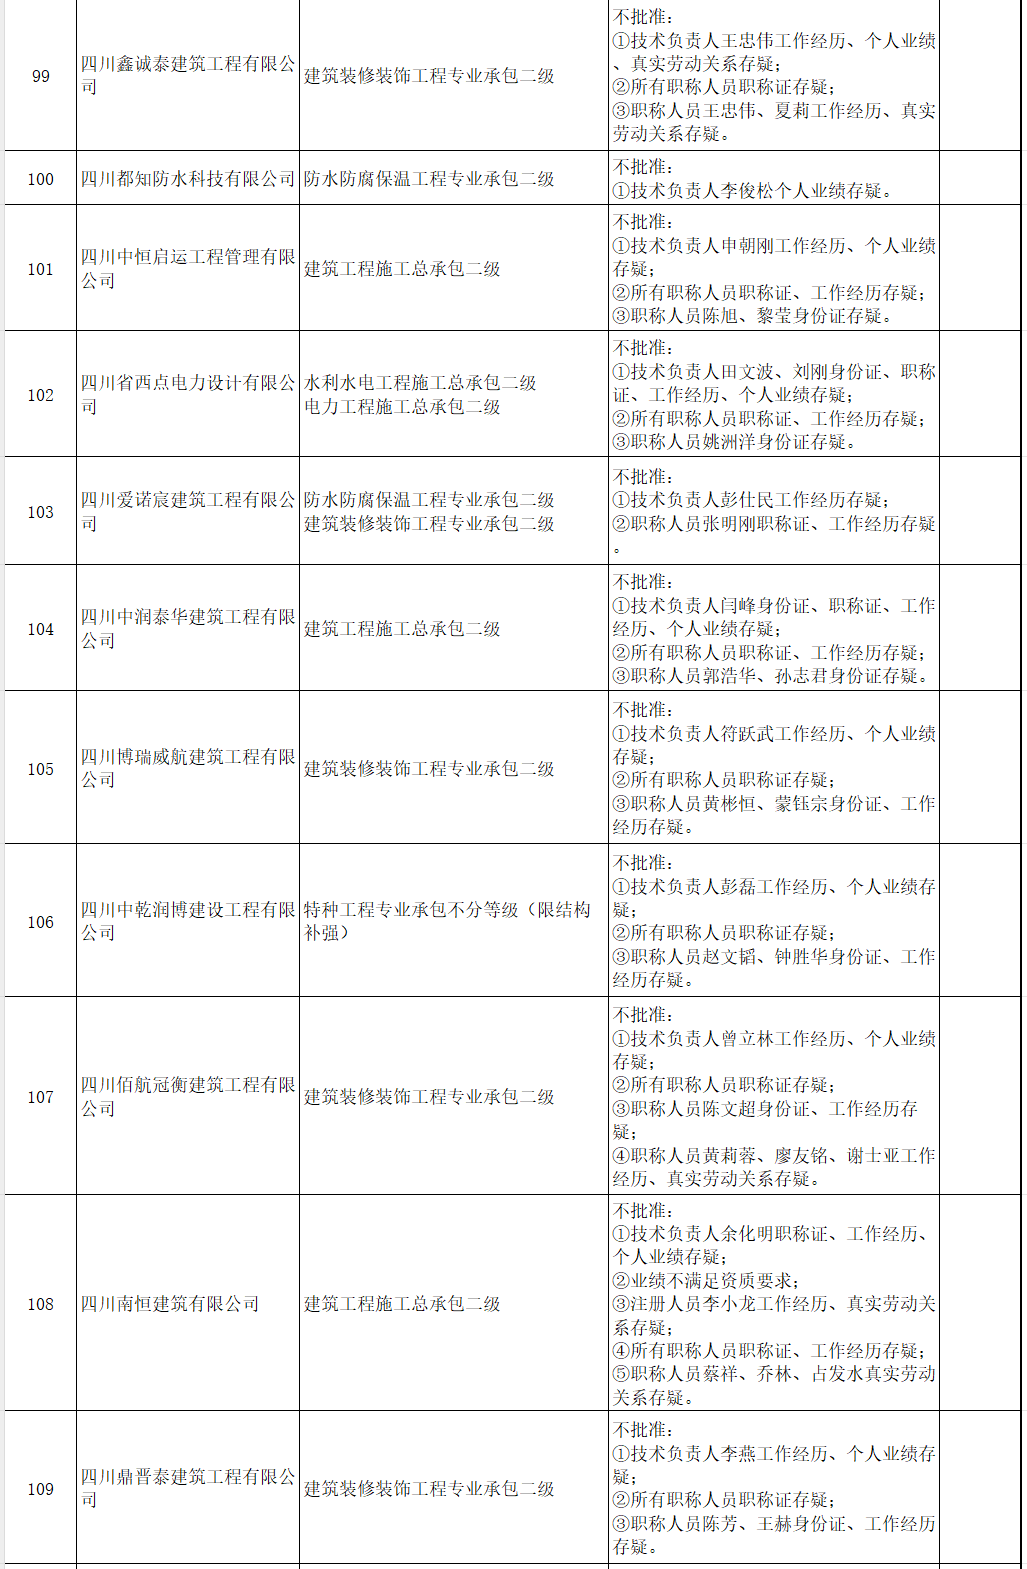 四川省住房和城乡建设厅关于建设类企业行政许可审批决定的通告